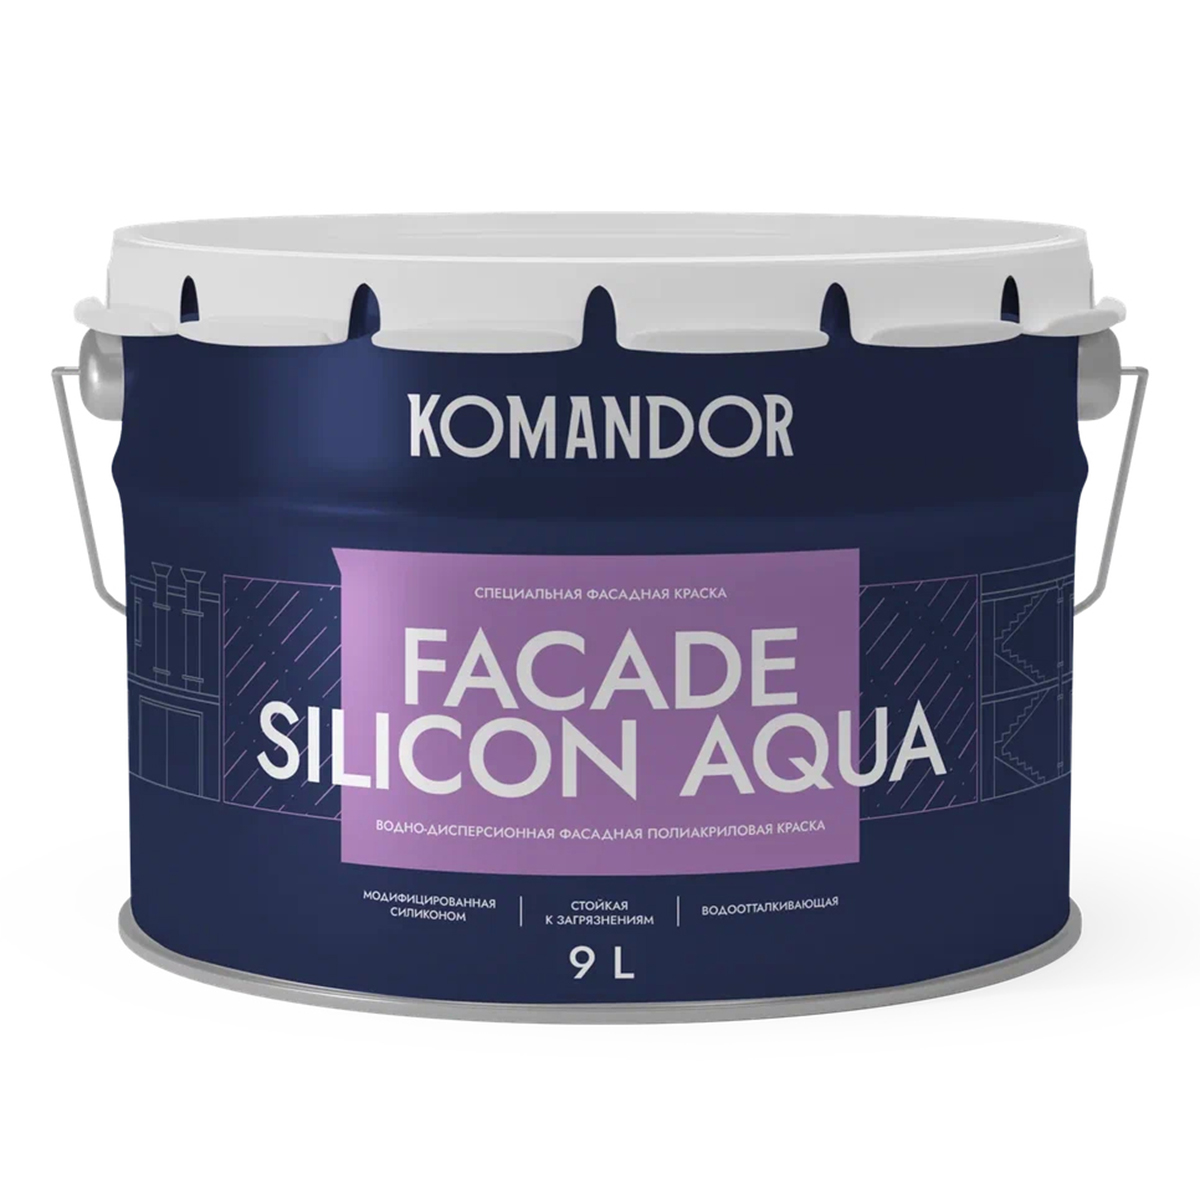 Краска фасадная Komandor Facade Silicon Aqua, глубокоматовая, база С, бесцветный, 9 л краска belinka lasur 12 10л бесцветный